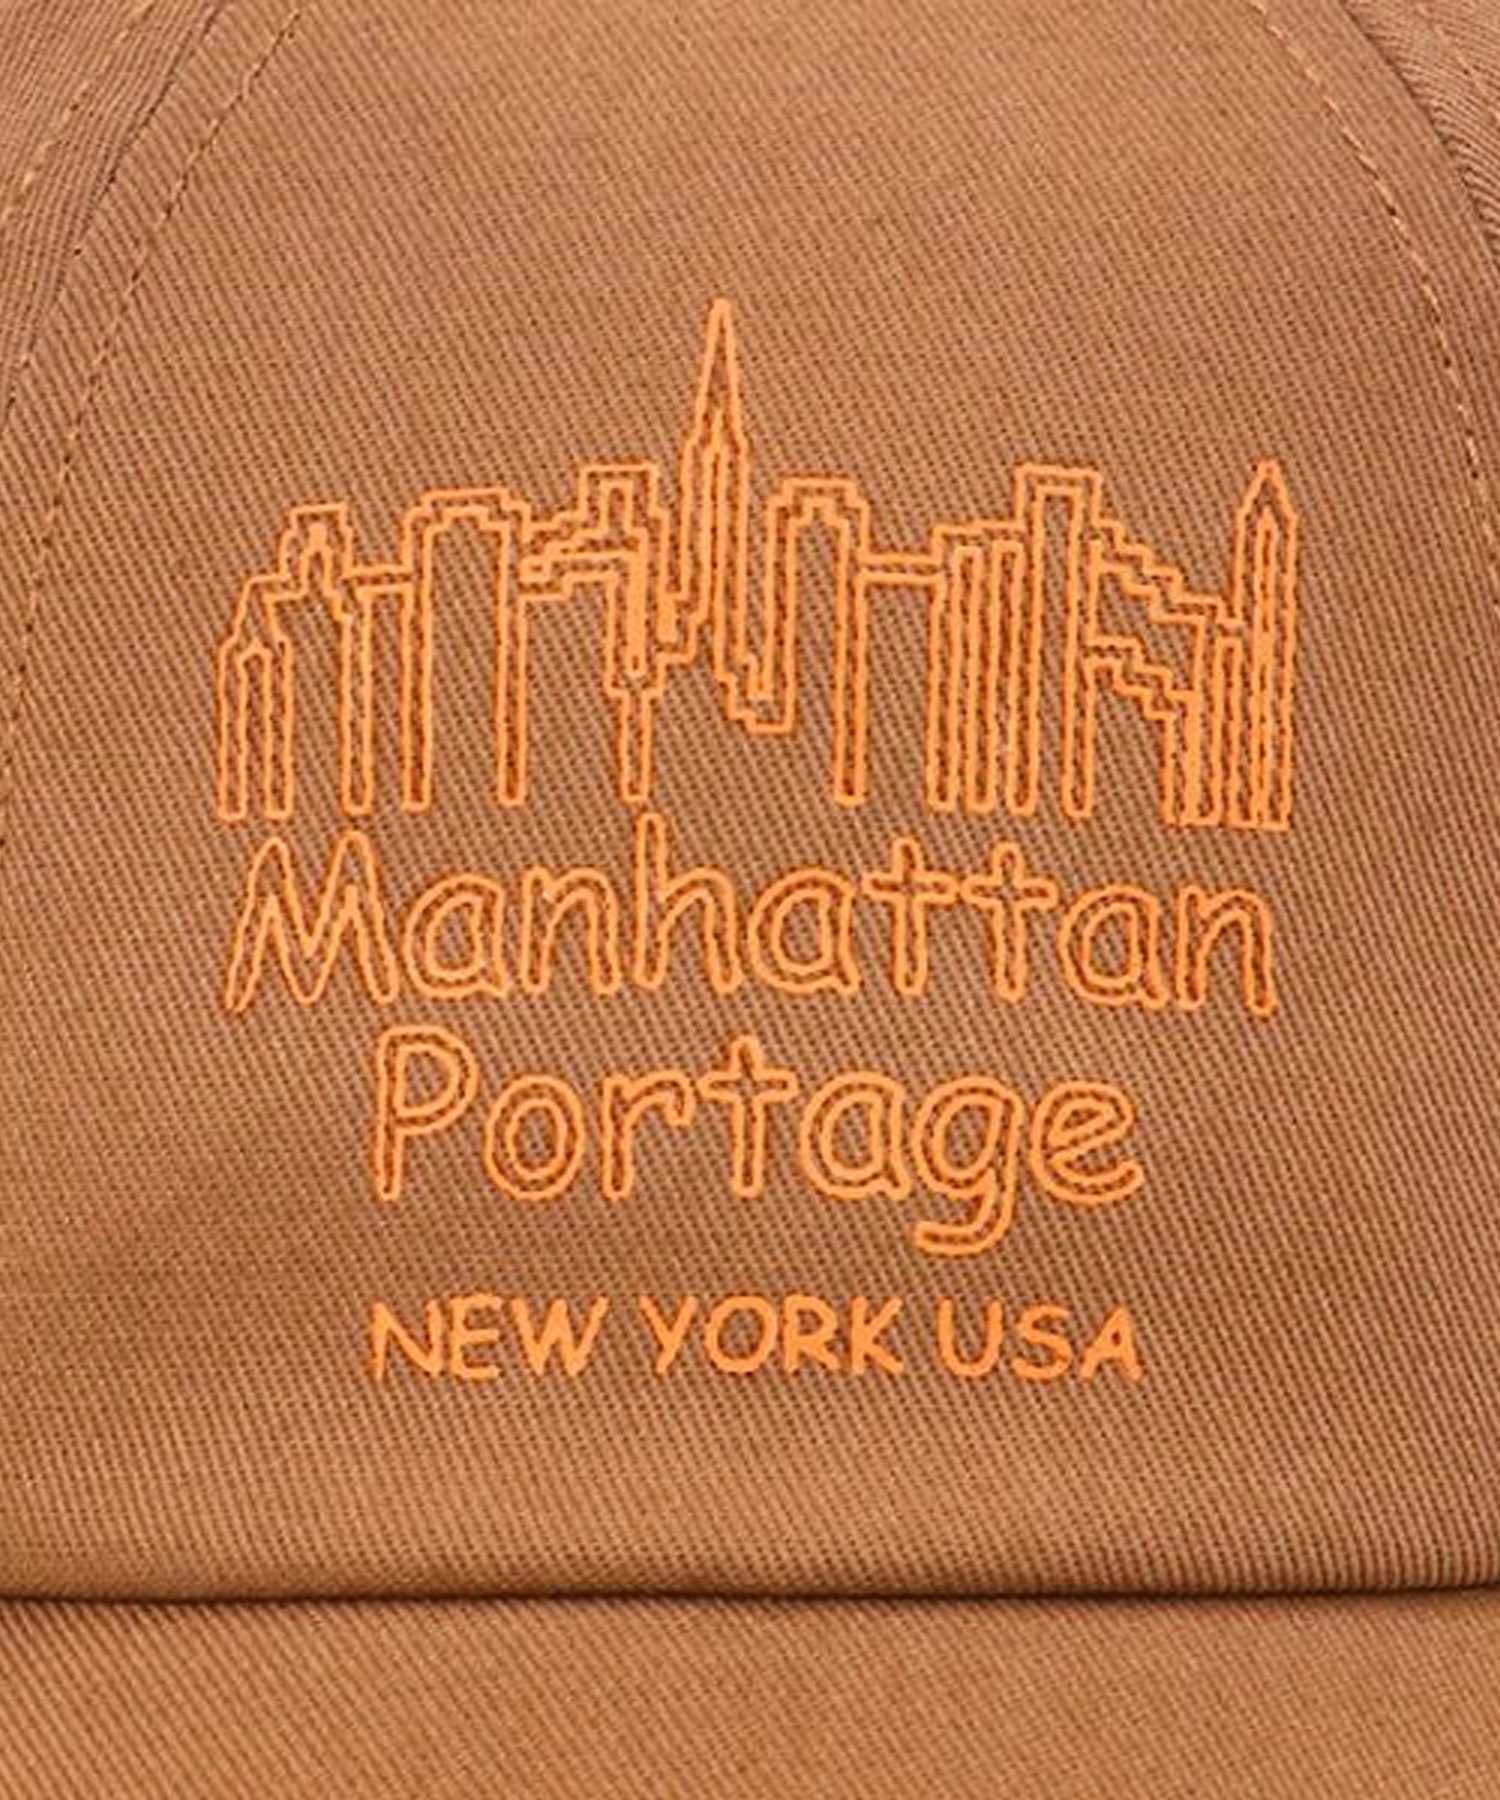 Manhattan Portage/マンハッタンポーテージ Panel Shift Print Cap キャップ 帽子 フリーサイズ MP211(WT/GR-FREE)